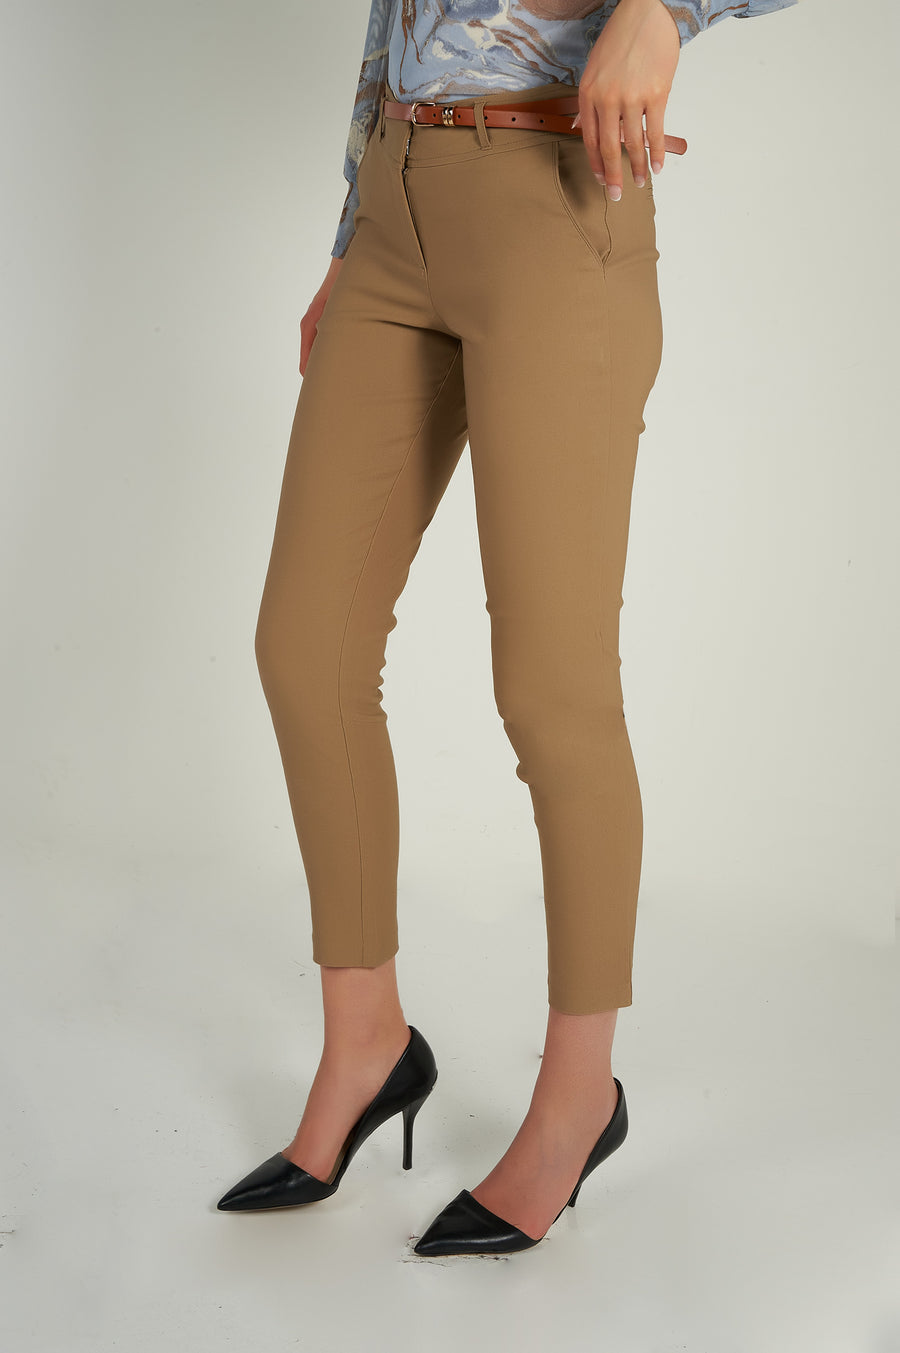 magasinez les pantalons pour femme de chez colori collection printemps été - Shop women's pants from colori spring summer collection